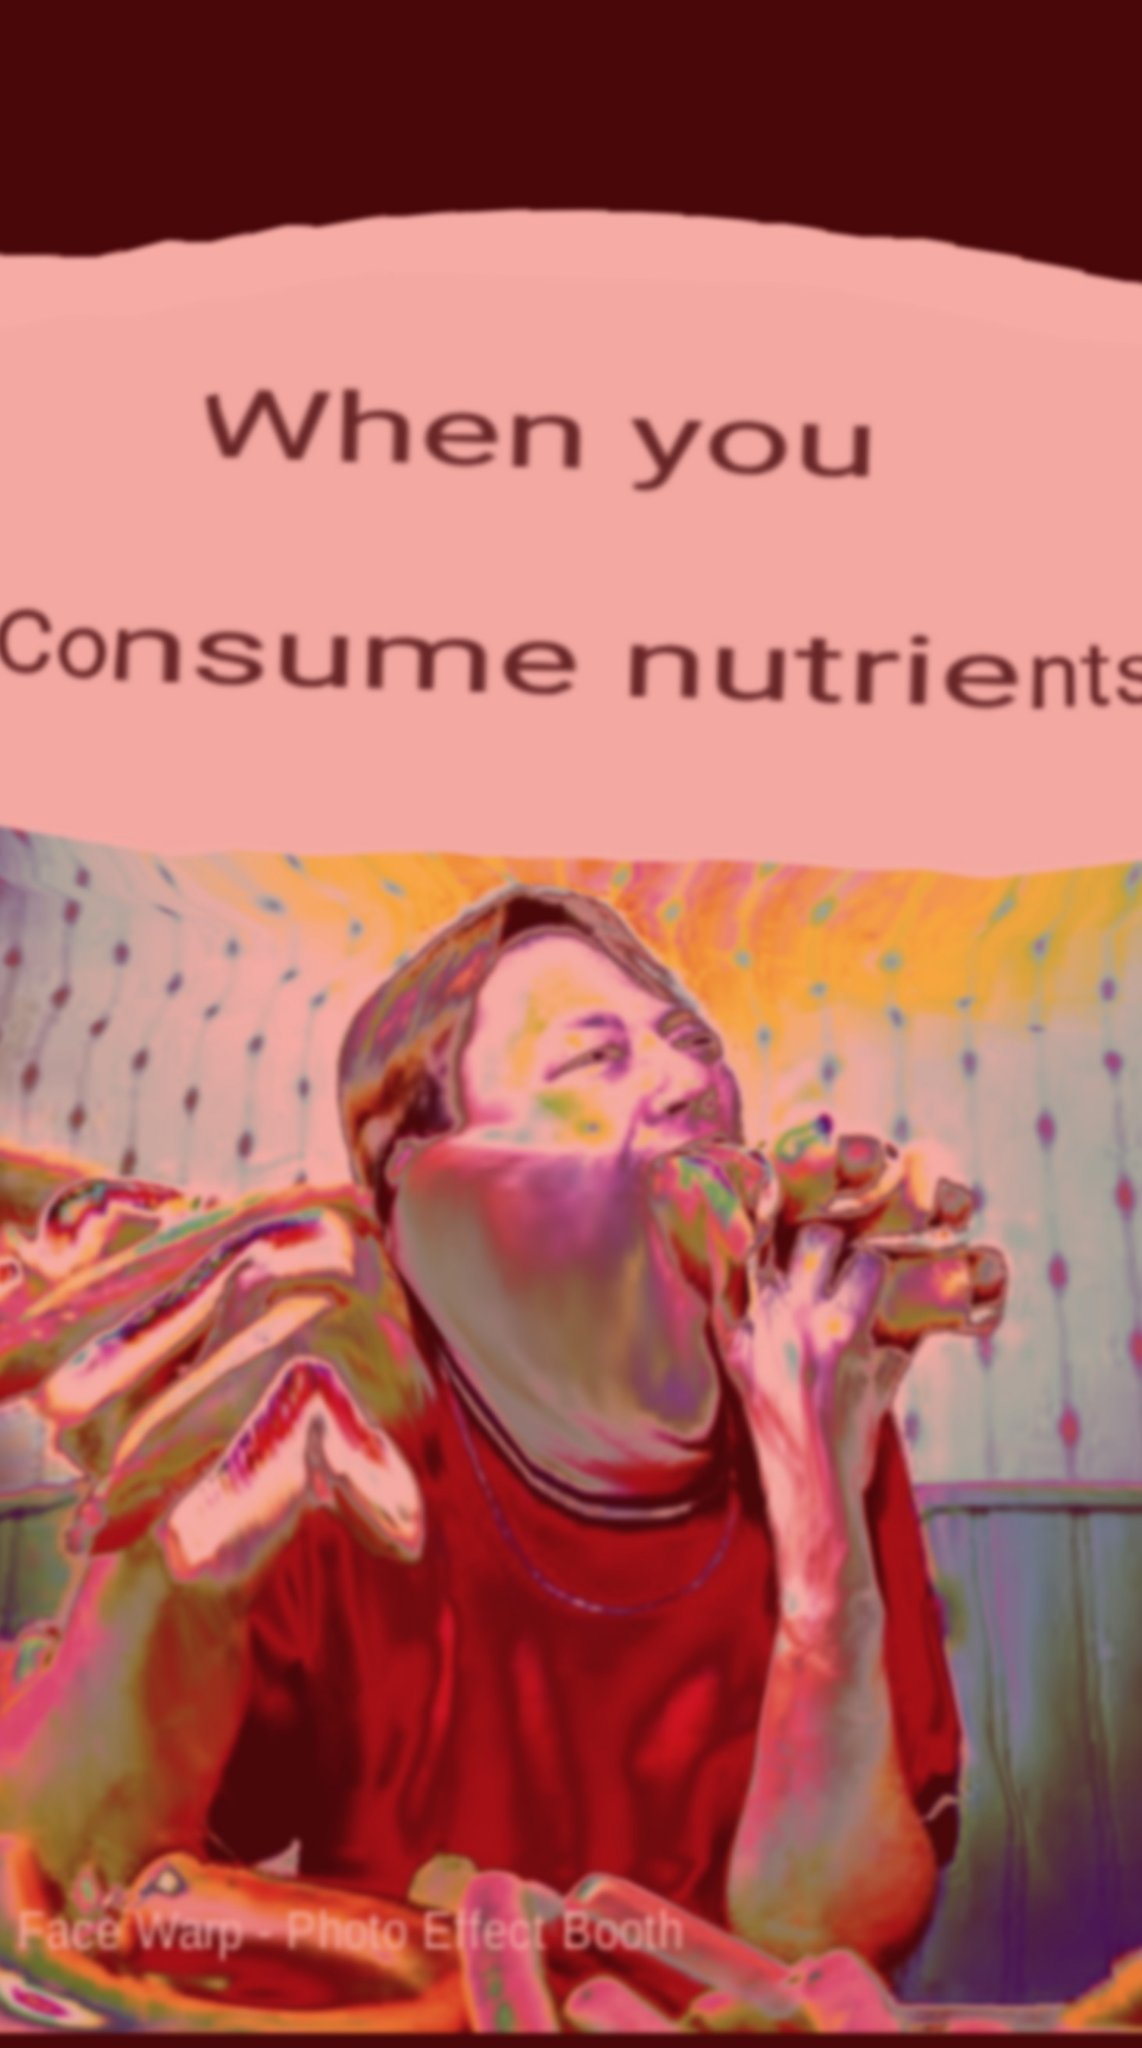 MMMM NUTRIENTS - meme